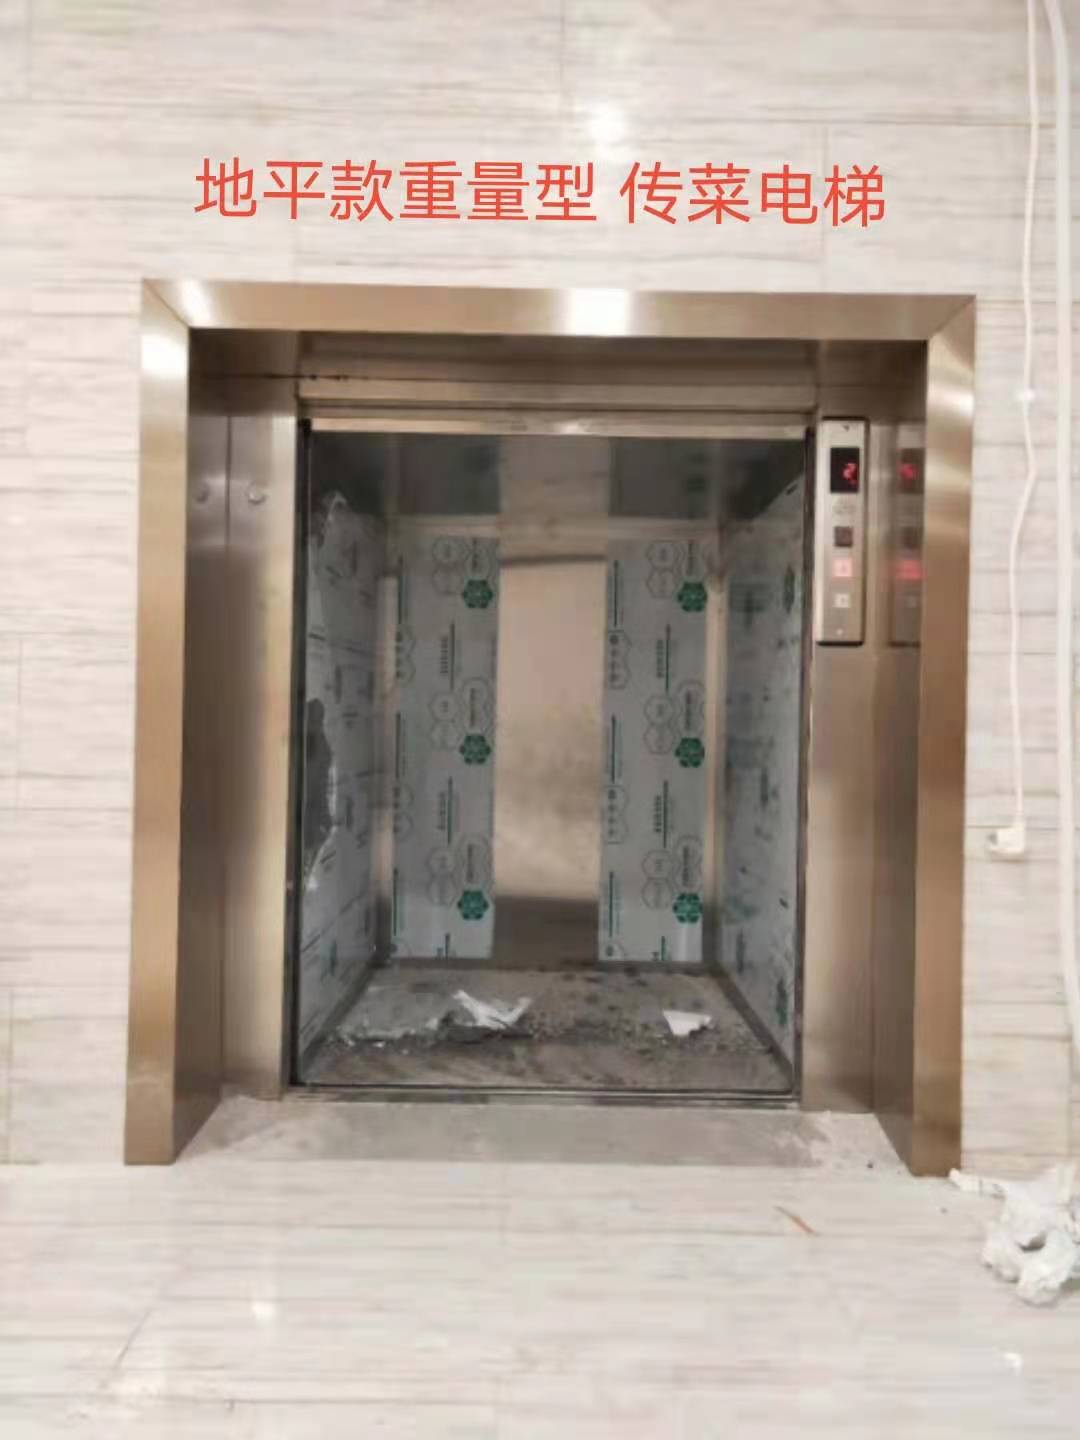 地平式传菜电梯 (2)